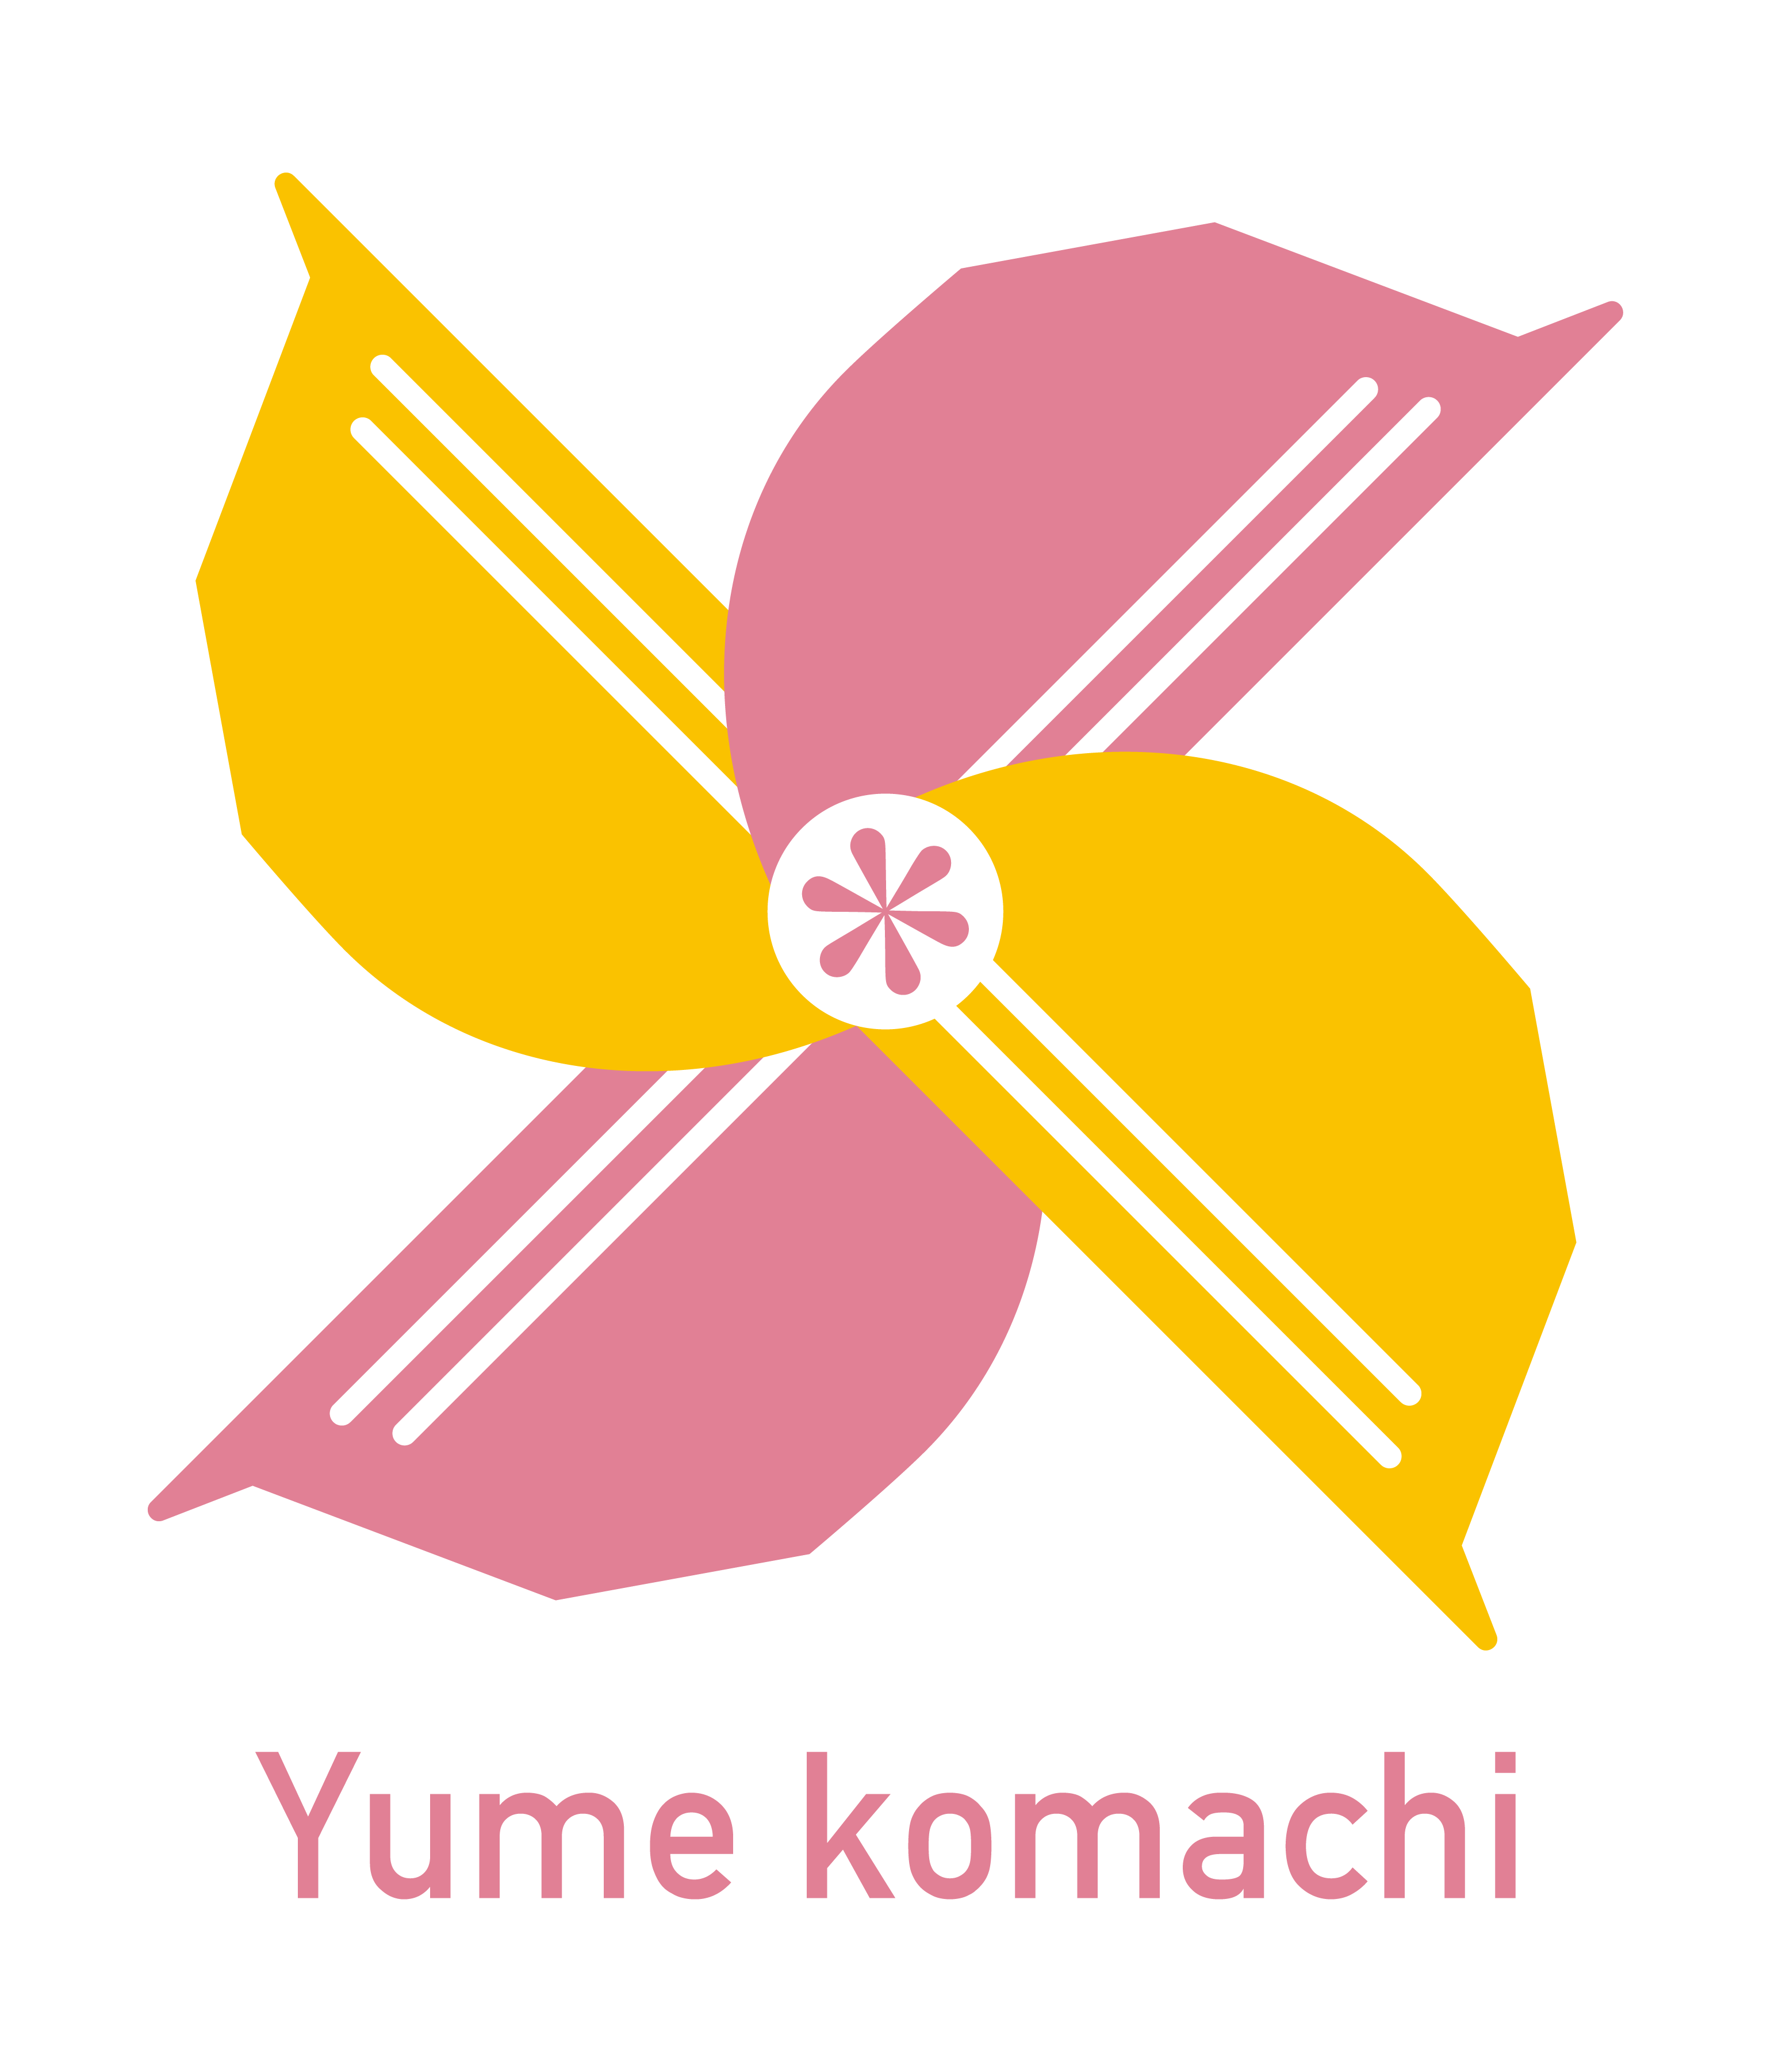 Yume komachi logo_Print.png